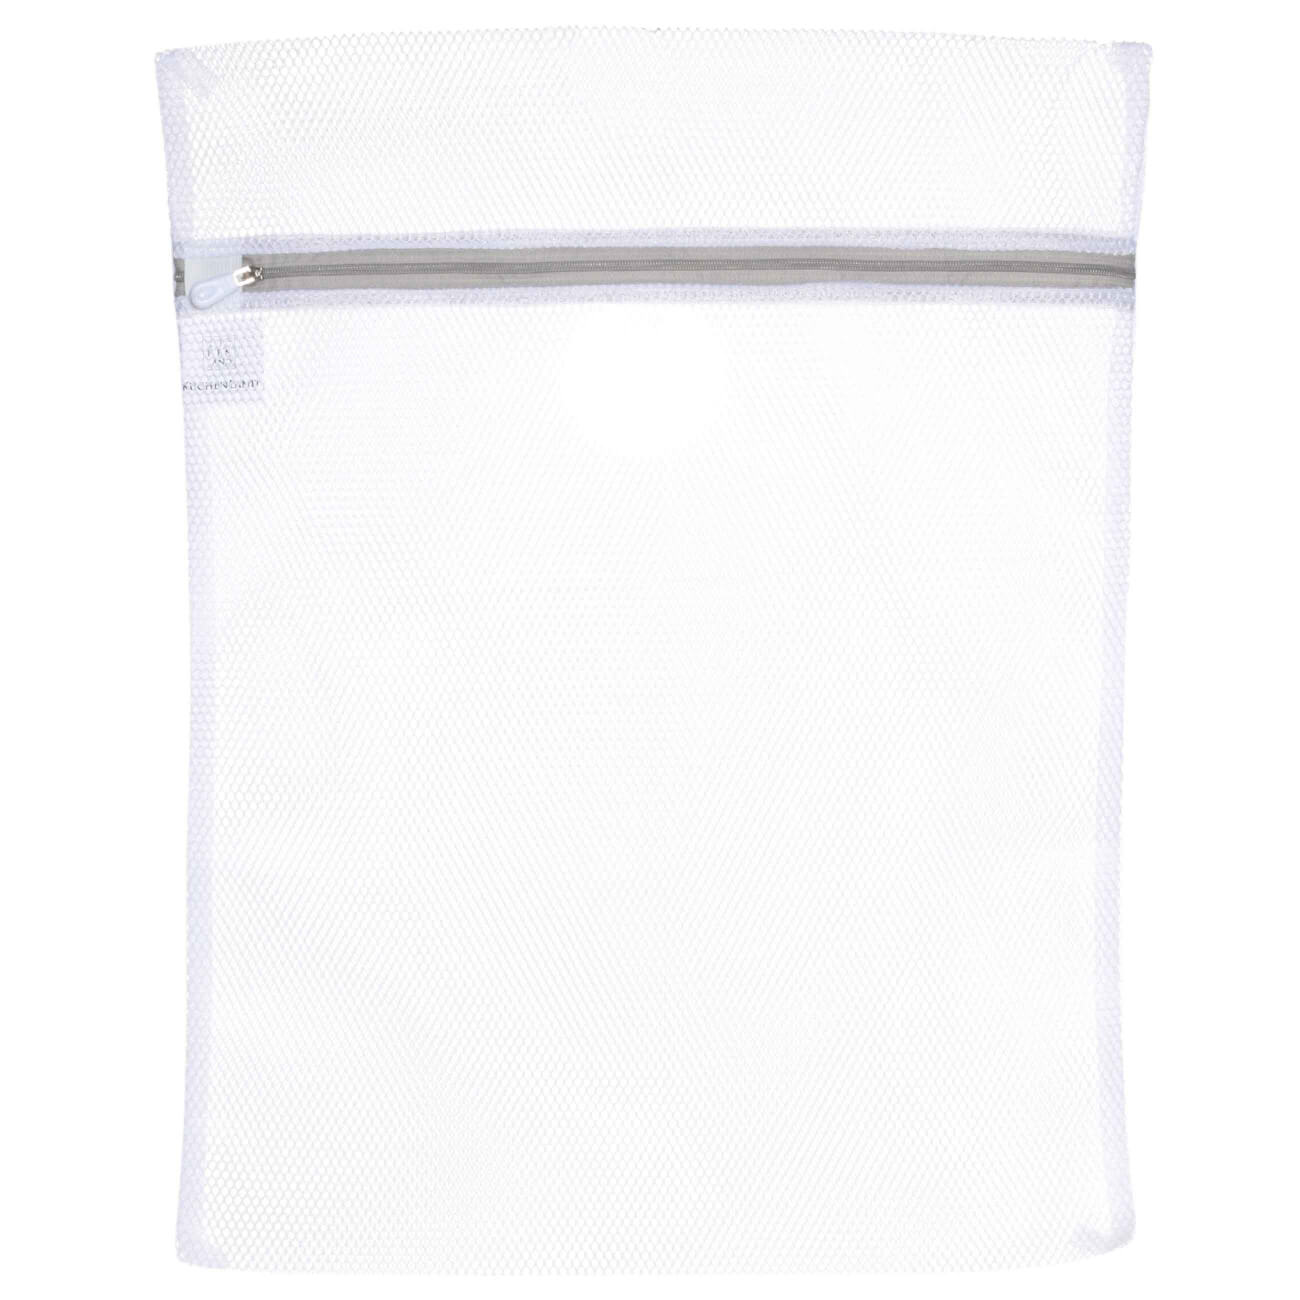 Мешок для стирки одежды, 40х50 см, полиэстер, бело-серый, Safety мешок для стирки бюстгальтеров essentielb цвет белый